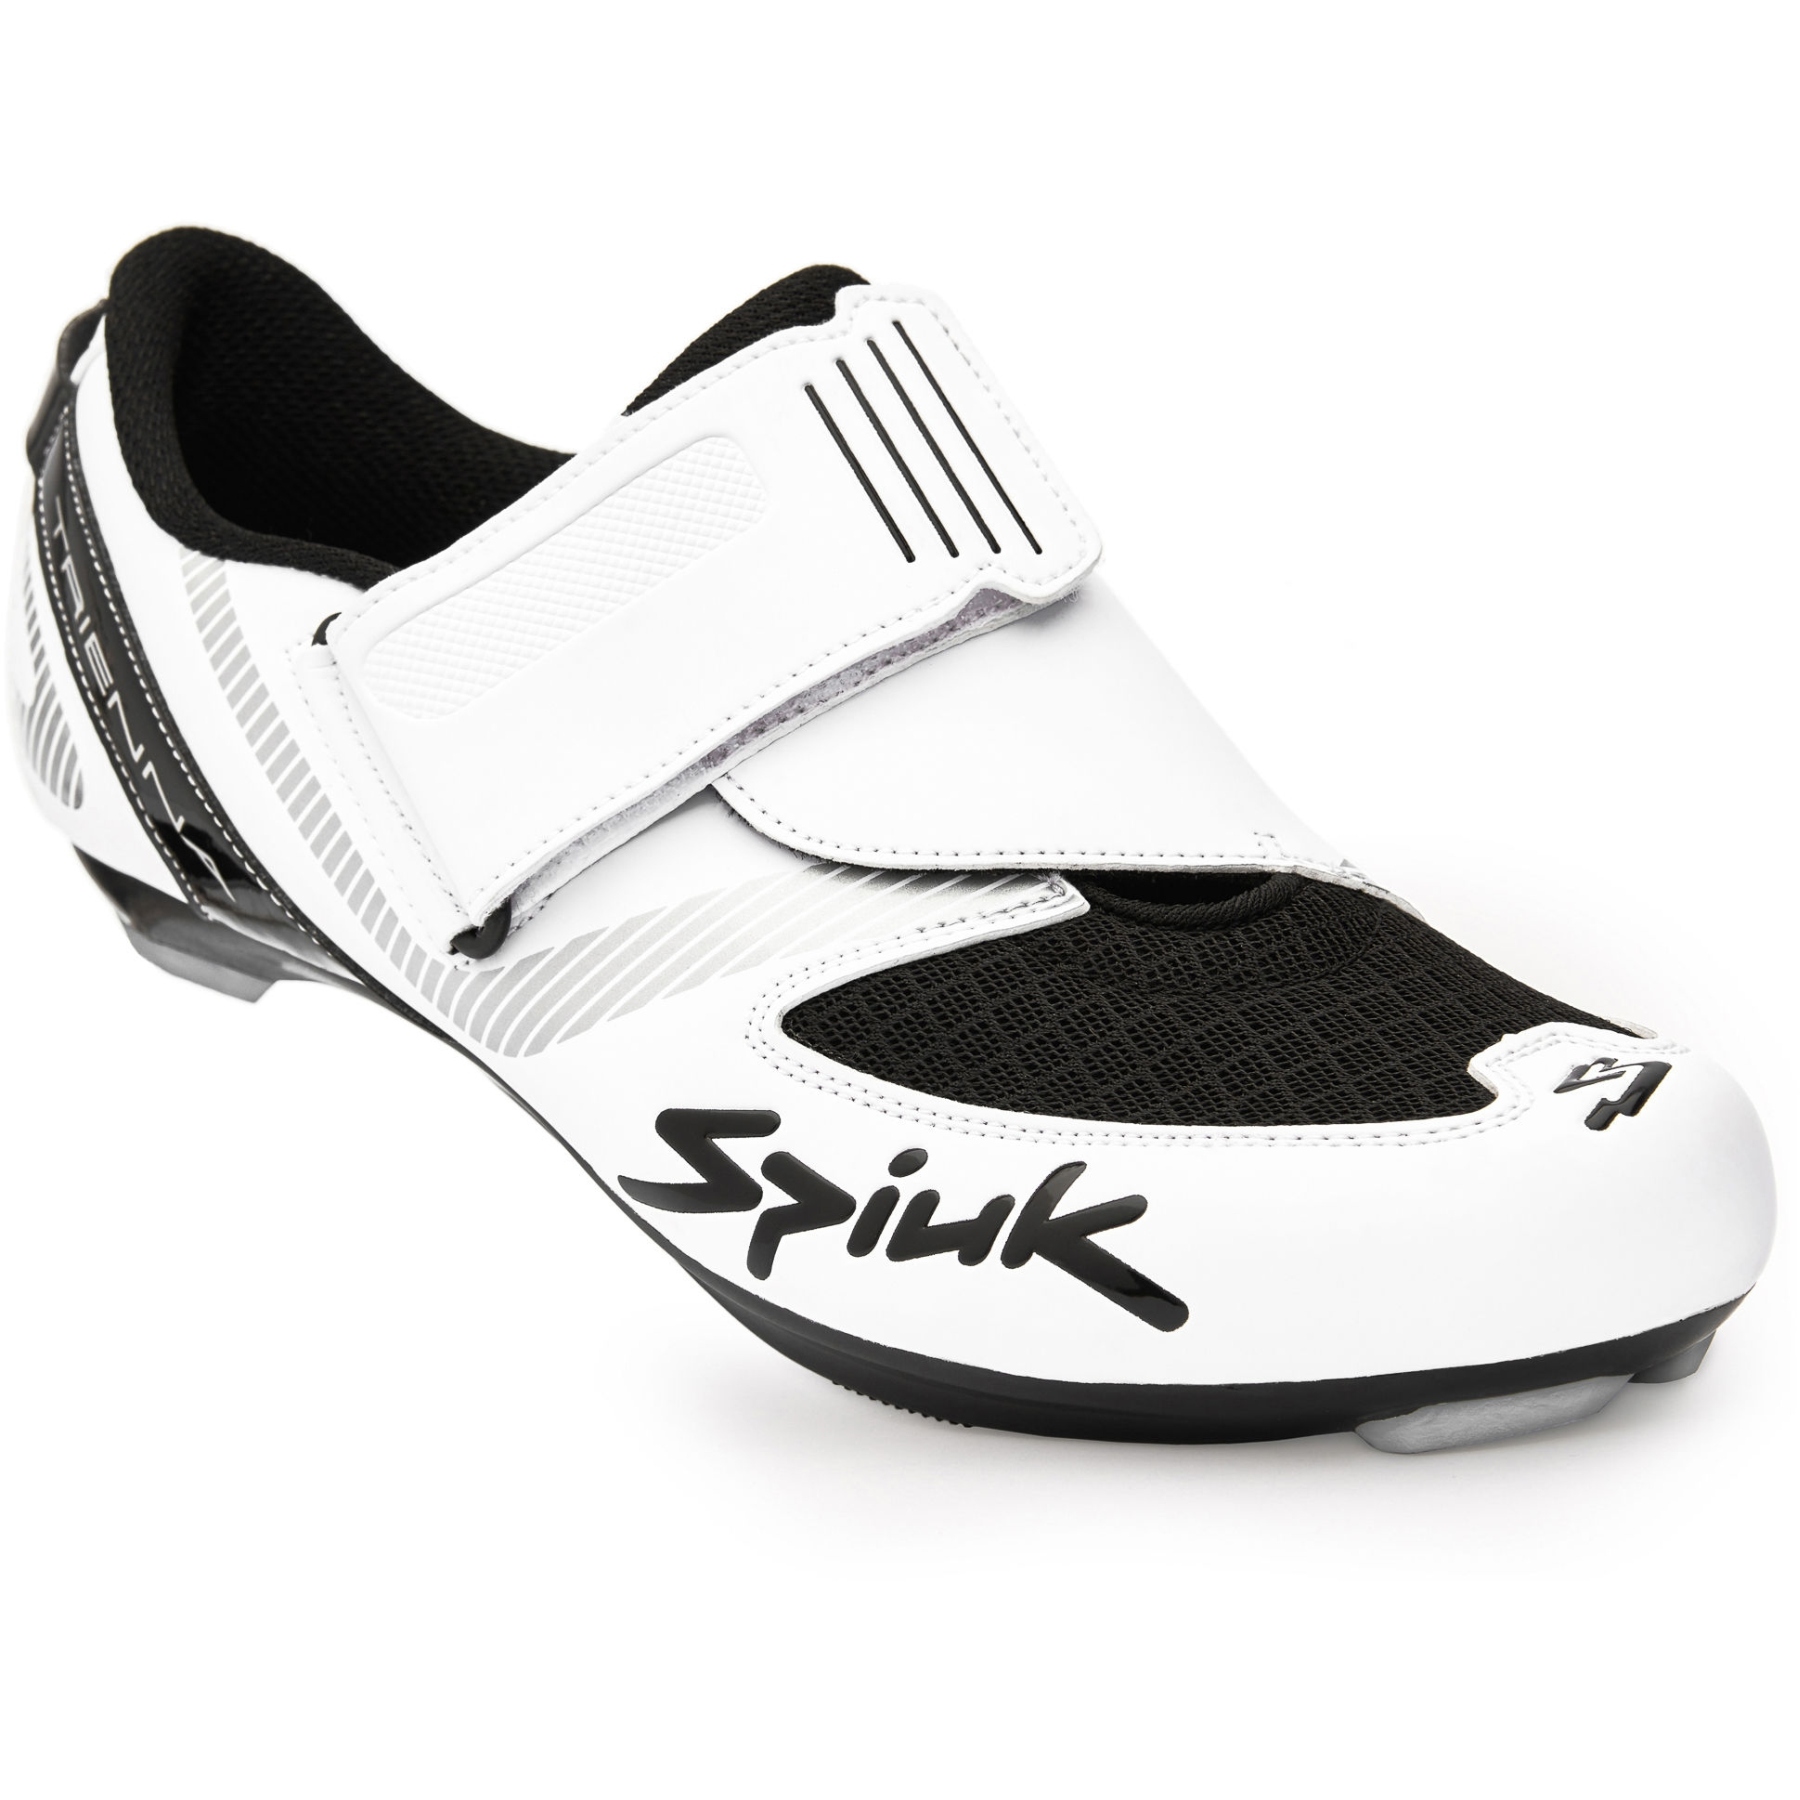 Produktbild von Spiuk Trienna Triathlon Schuh - white matt